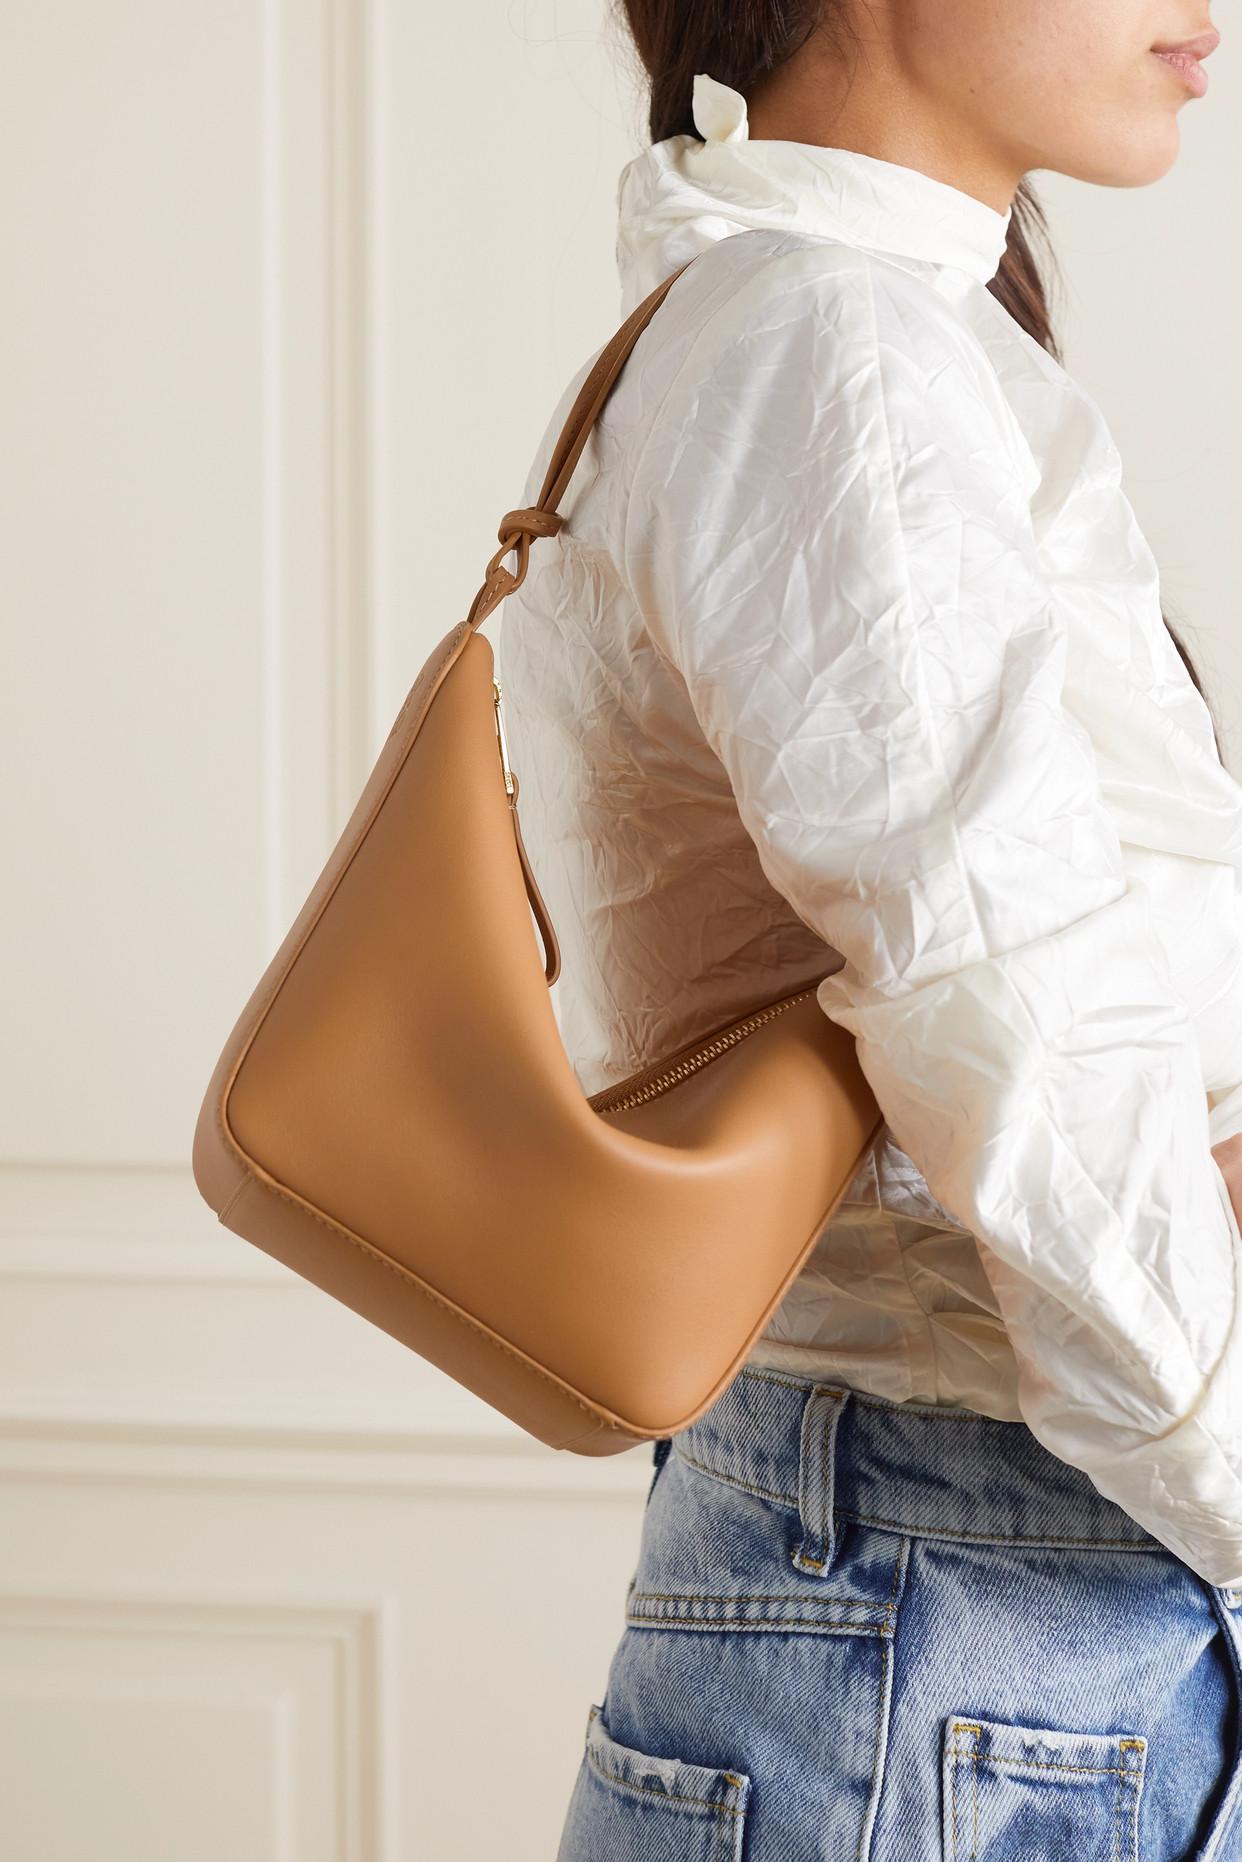 Hammock Small Leather Shoulder Bag in Brown - Loewe